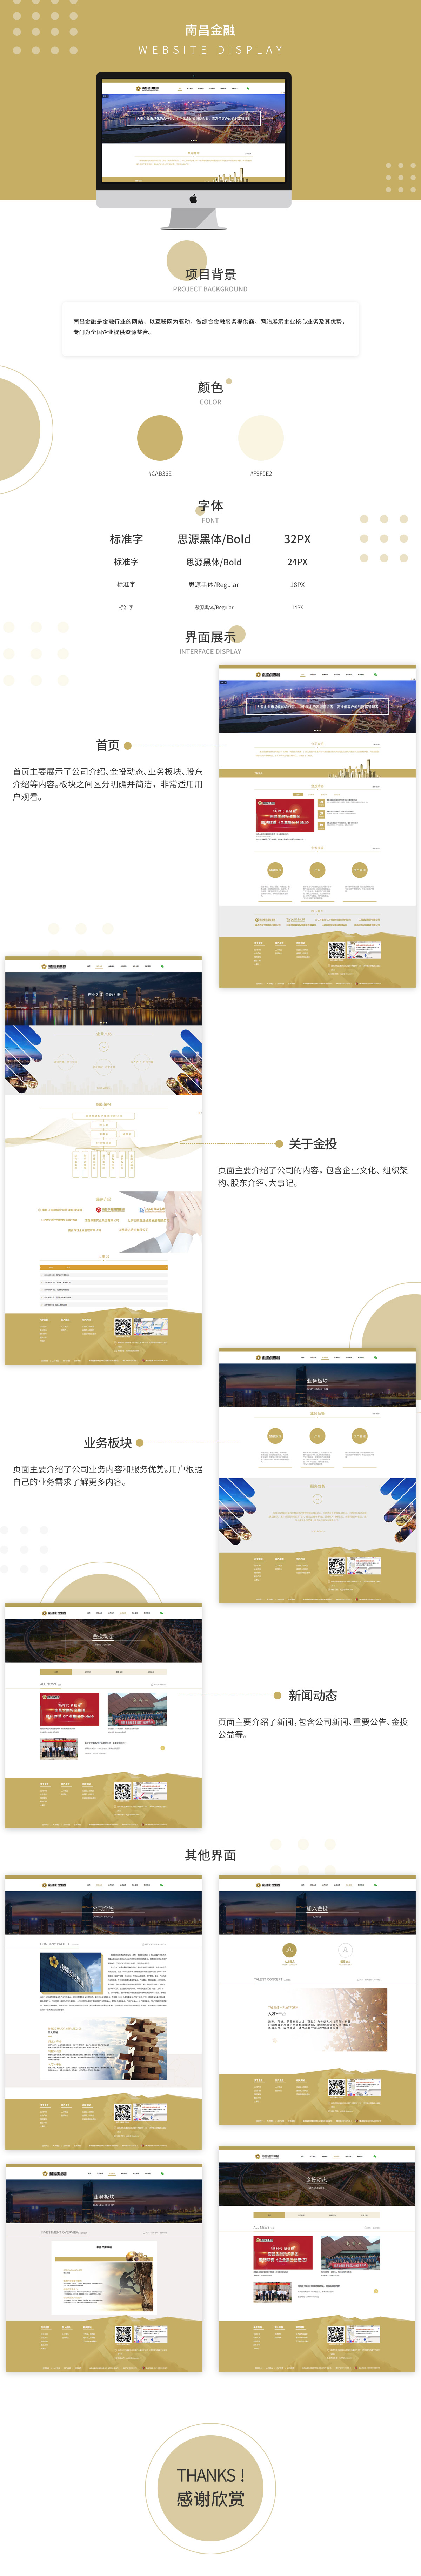 南昌金融投资集团品牌网站案例